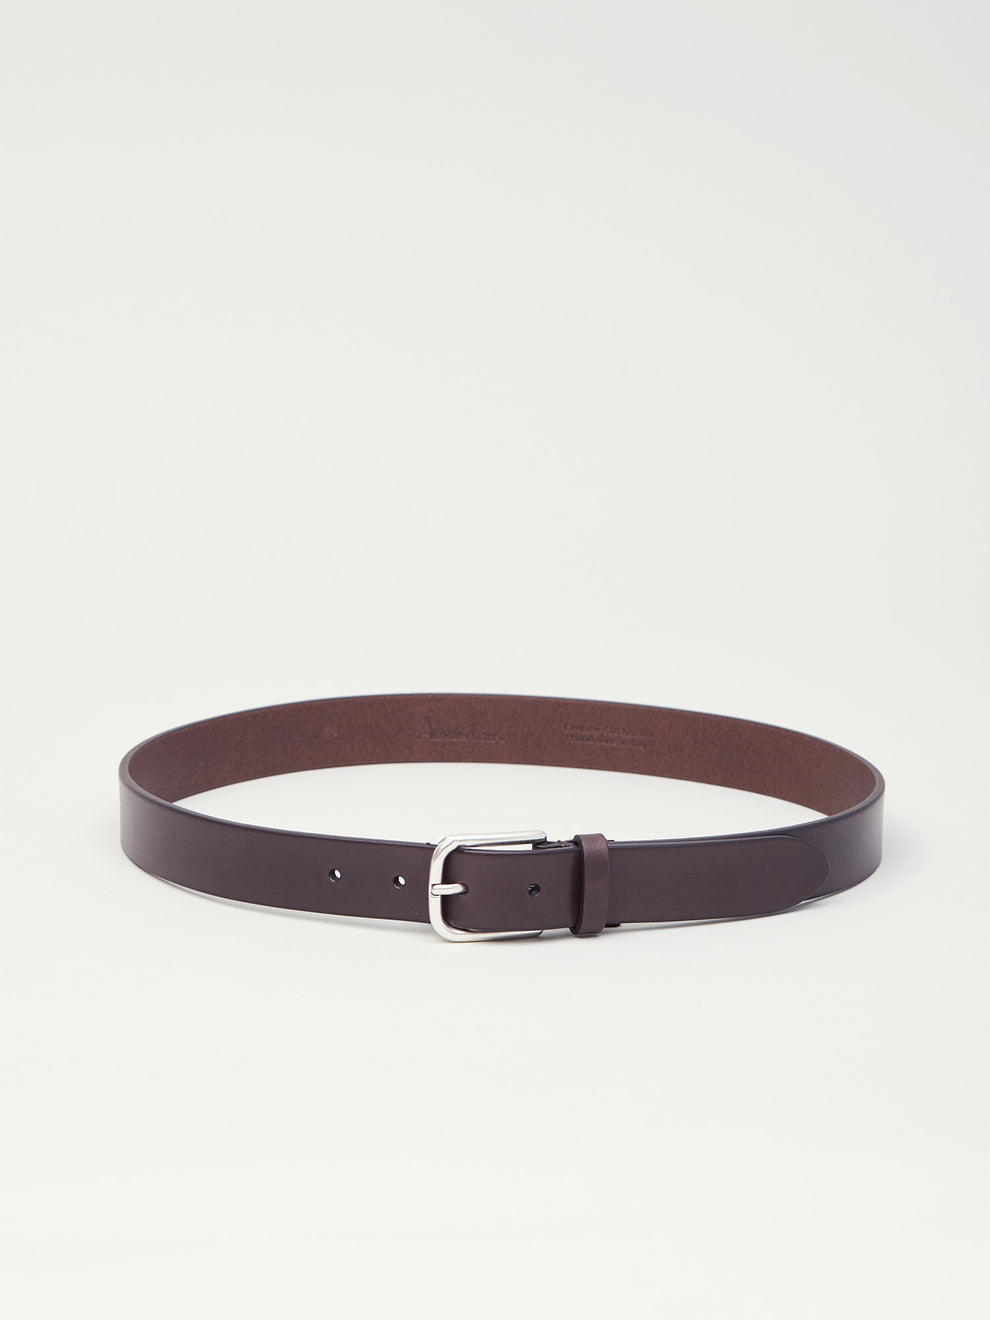 Leather Belt, Dark Brown – Goods